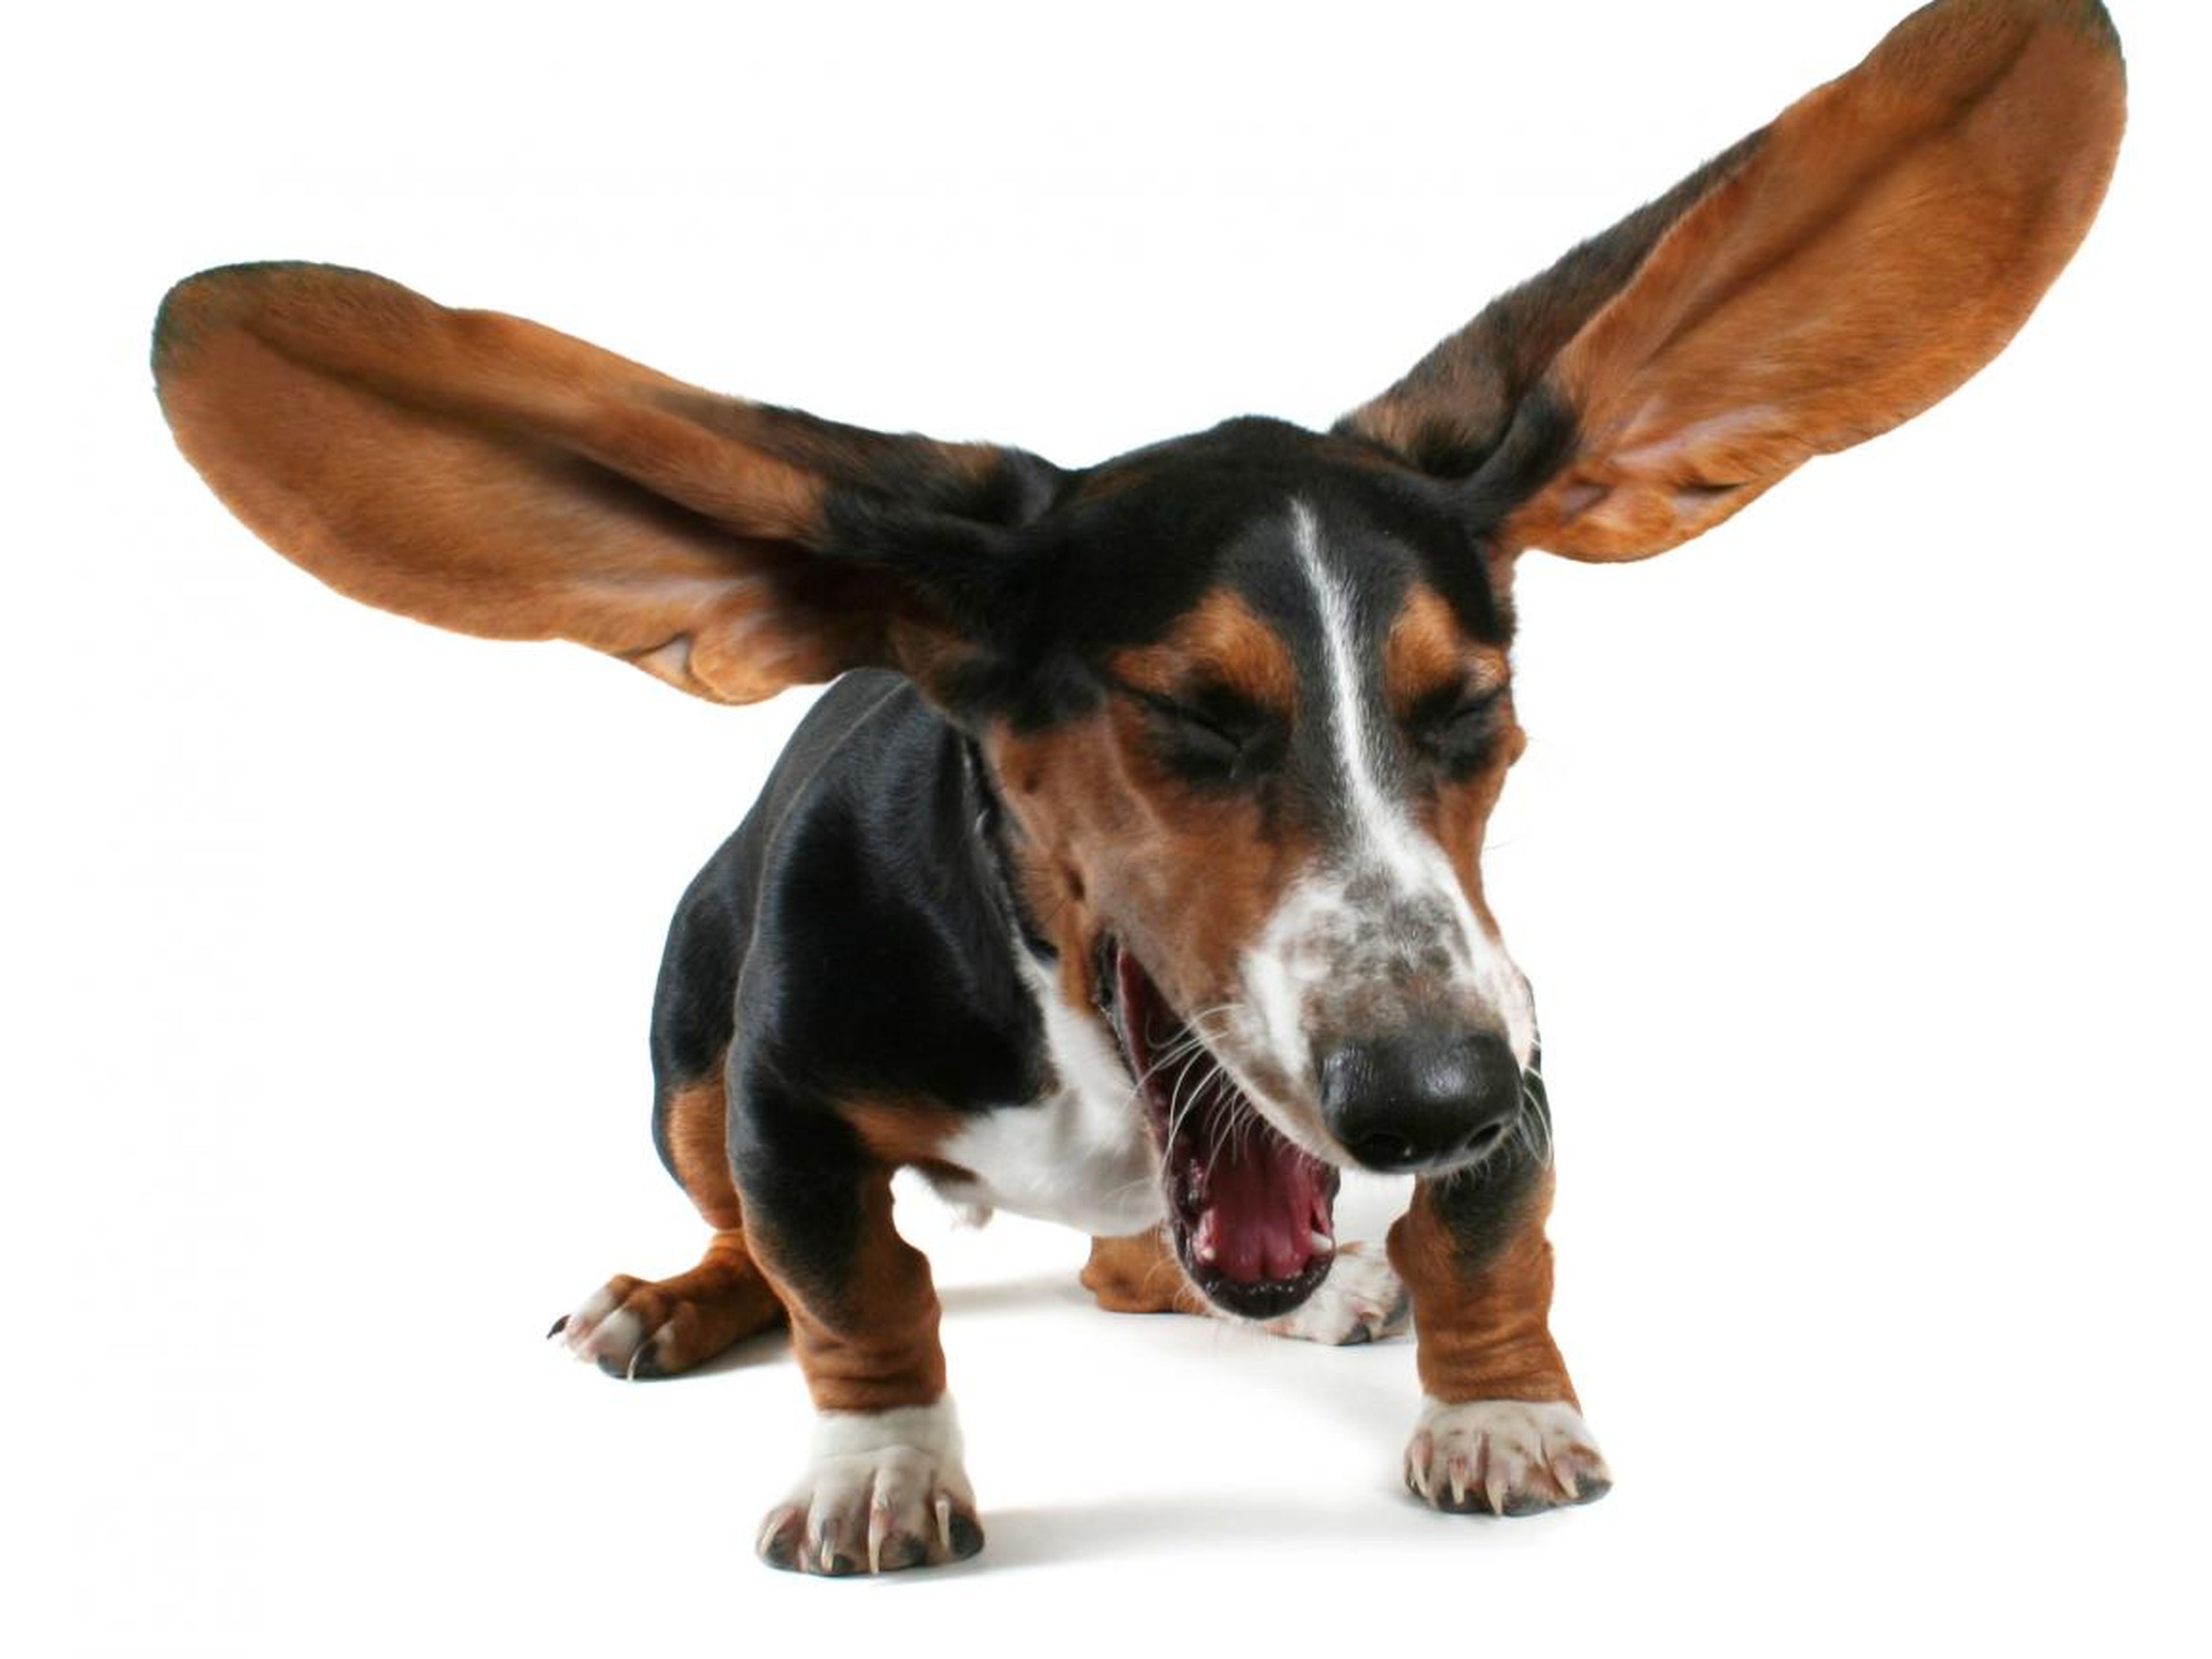 Un perro que estornuda mucho puede ser señal de algo negativo.